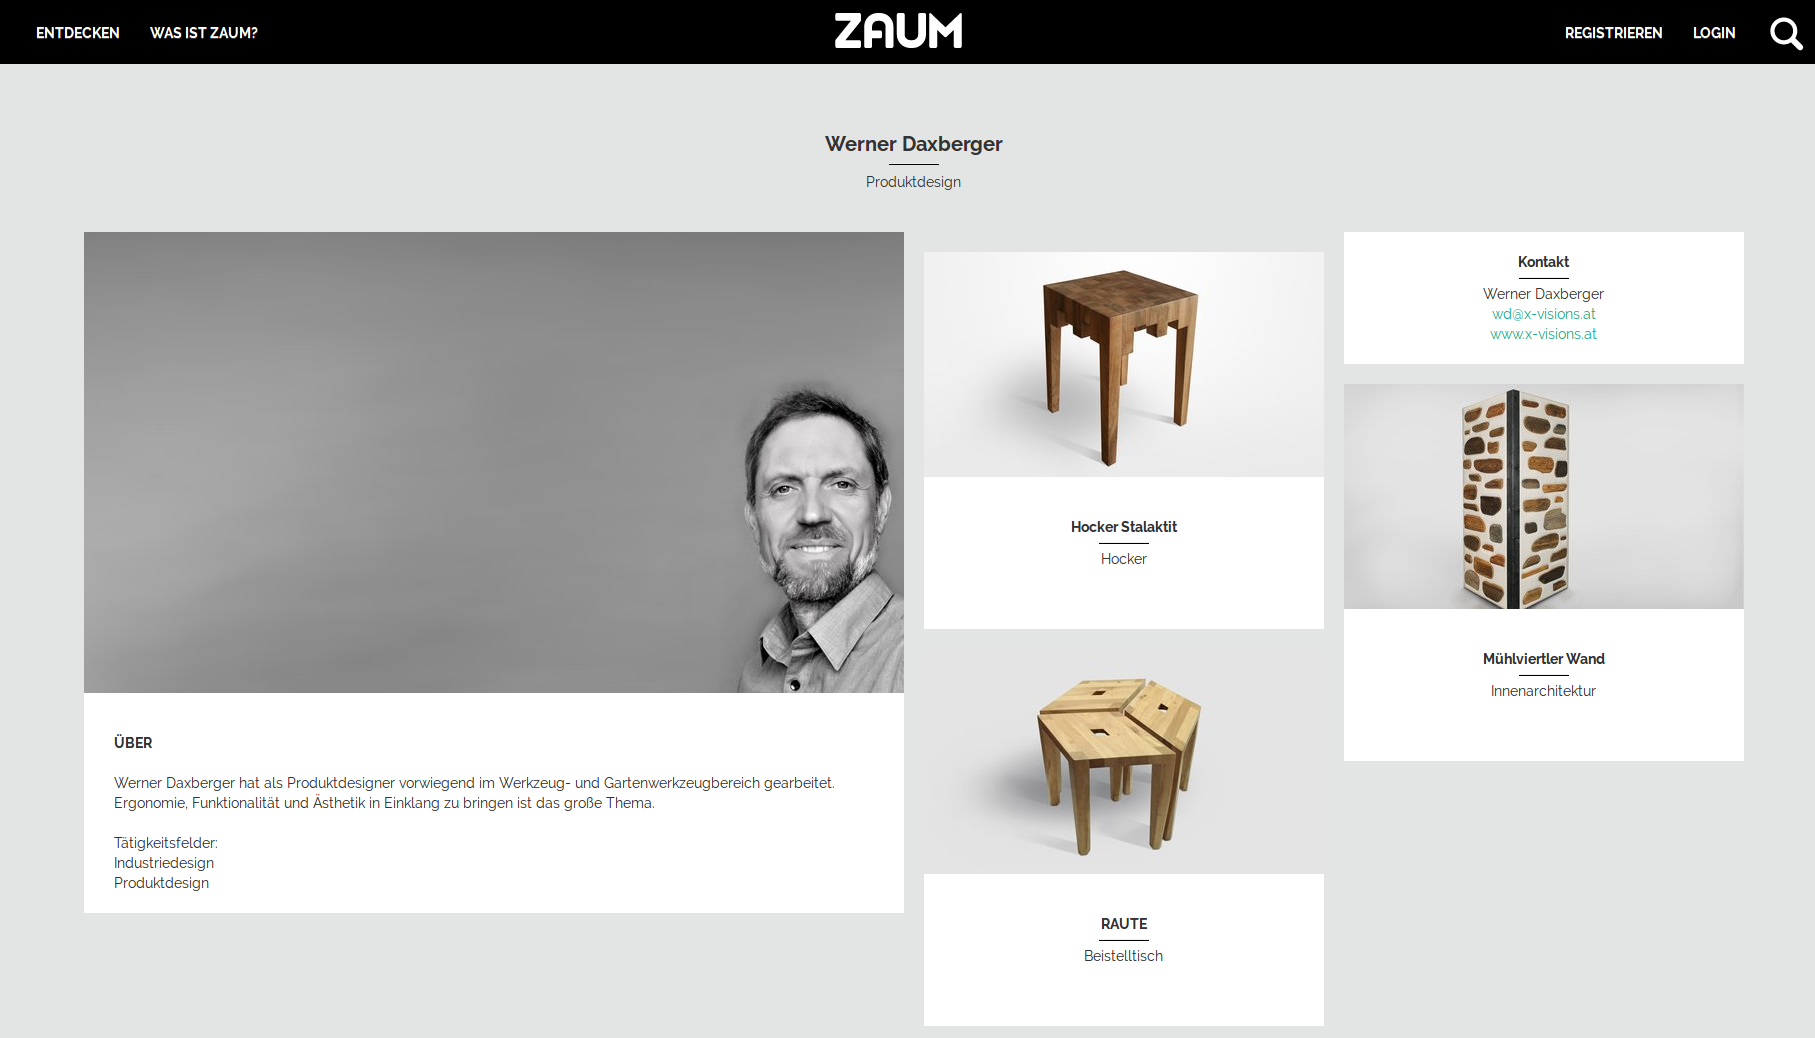 ZAUM Online-Plattform zur Präsentation von Produkten und Ideen